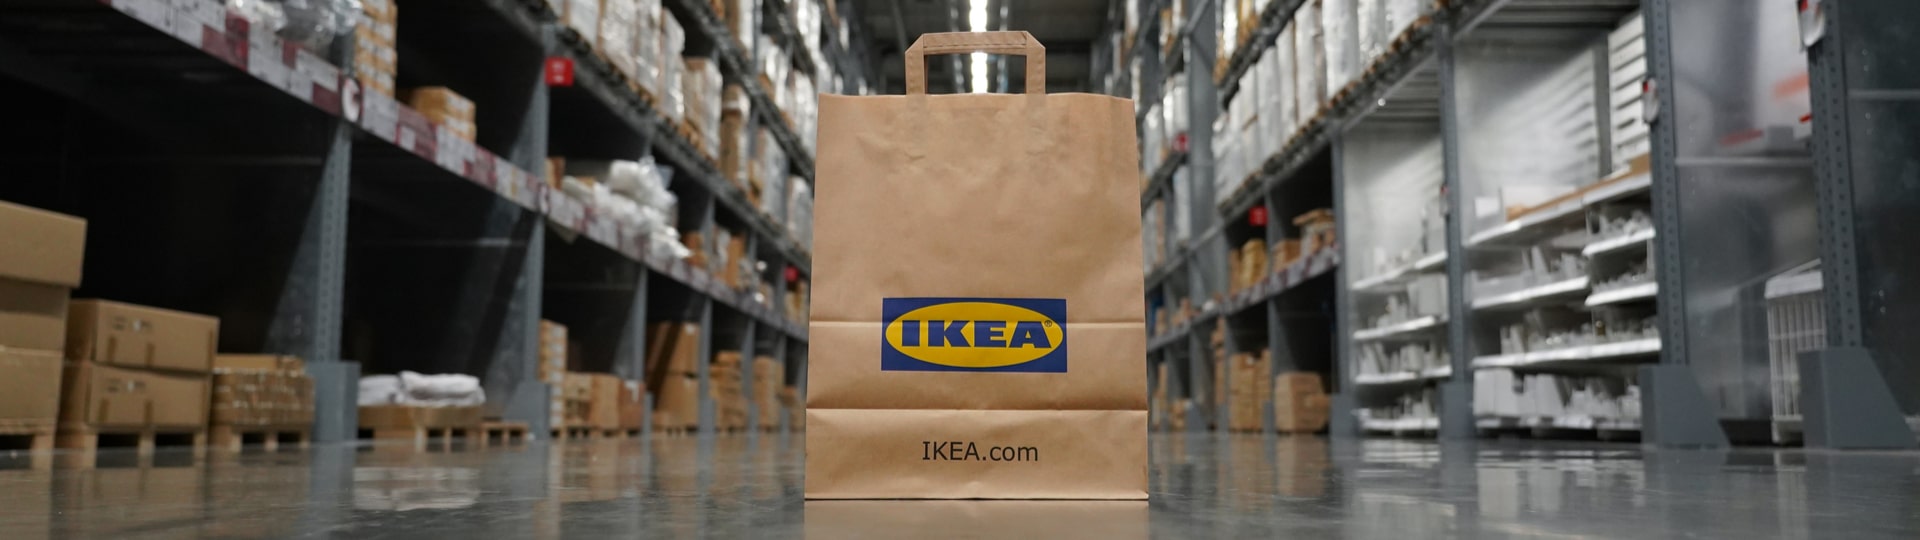 IKEA investuje do úpravy mimoměstských prodejen